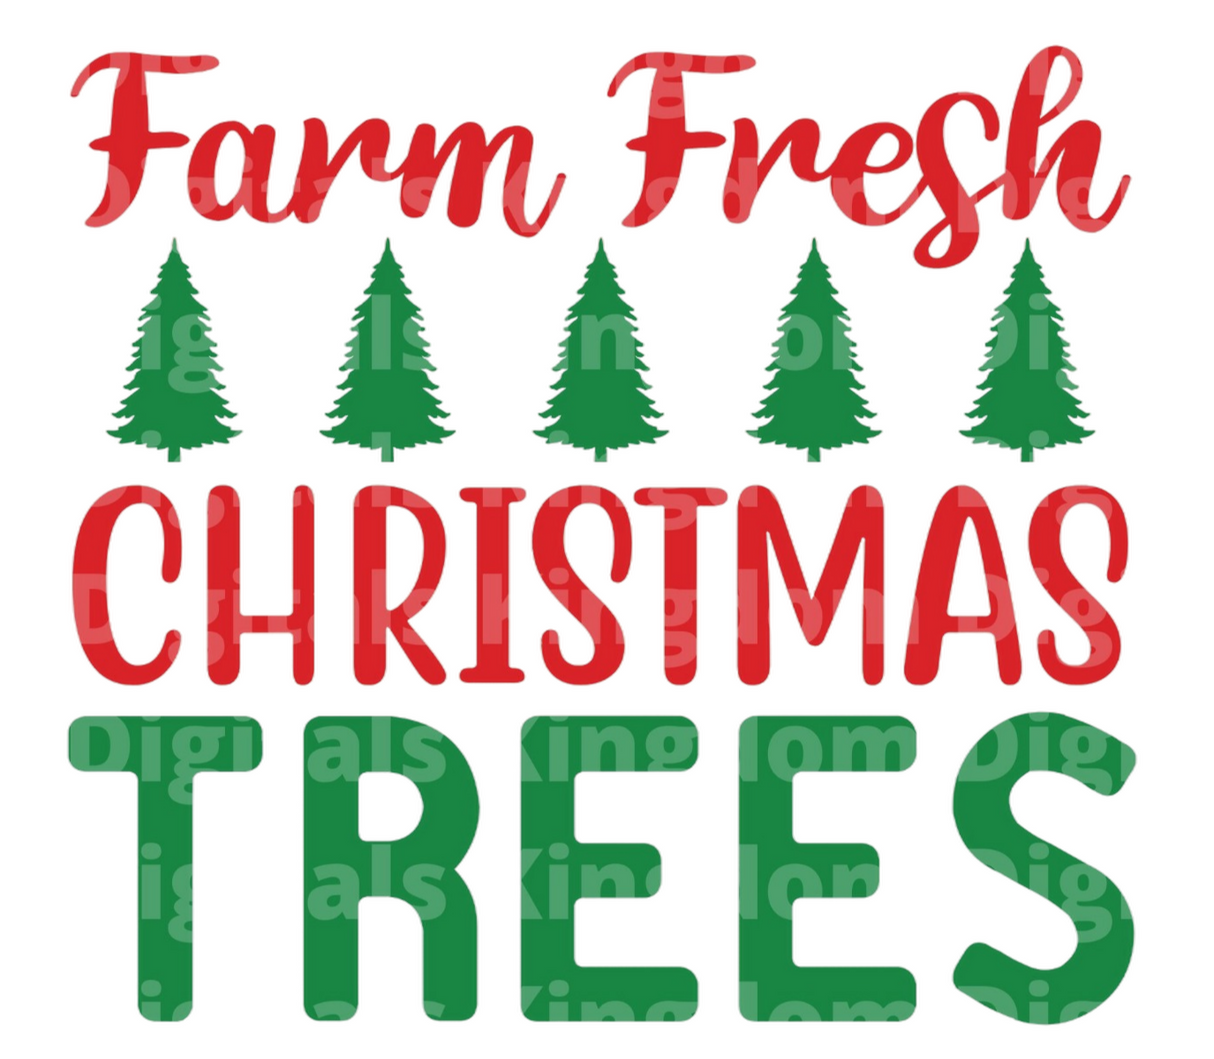 Farm Fresh Christmas Trees SVG Cut File